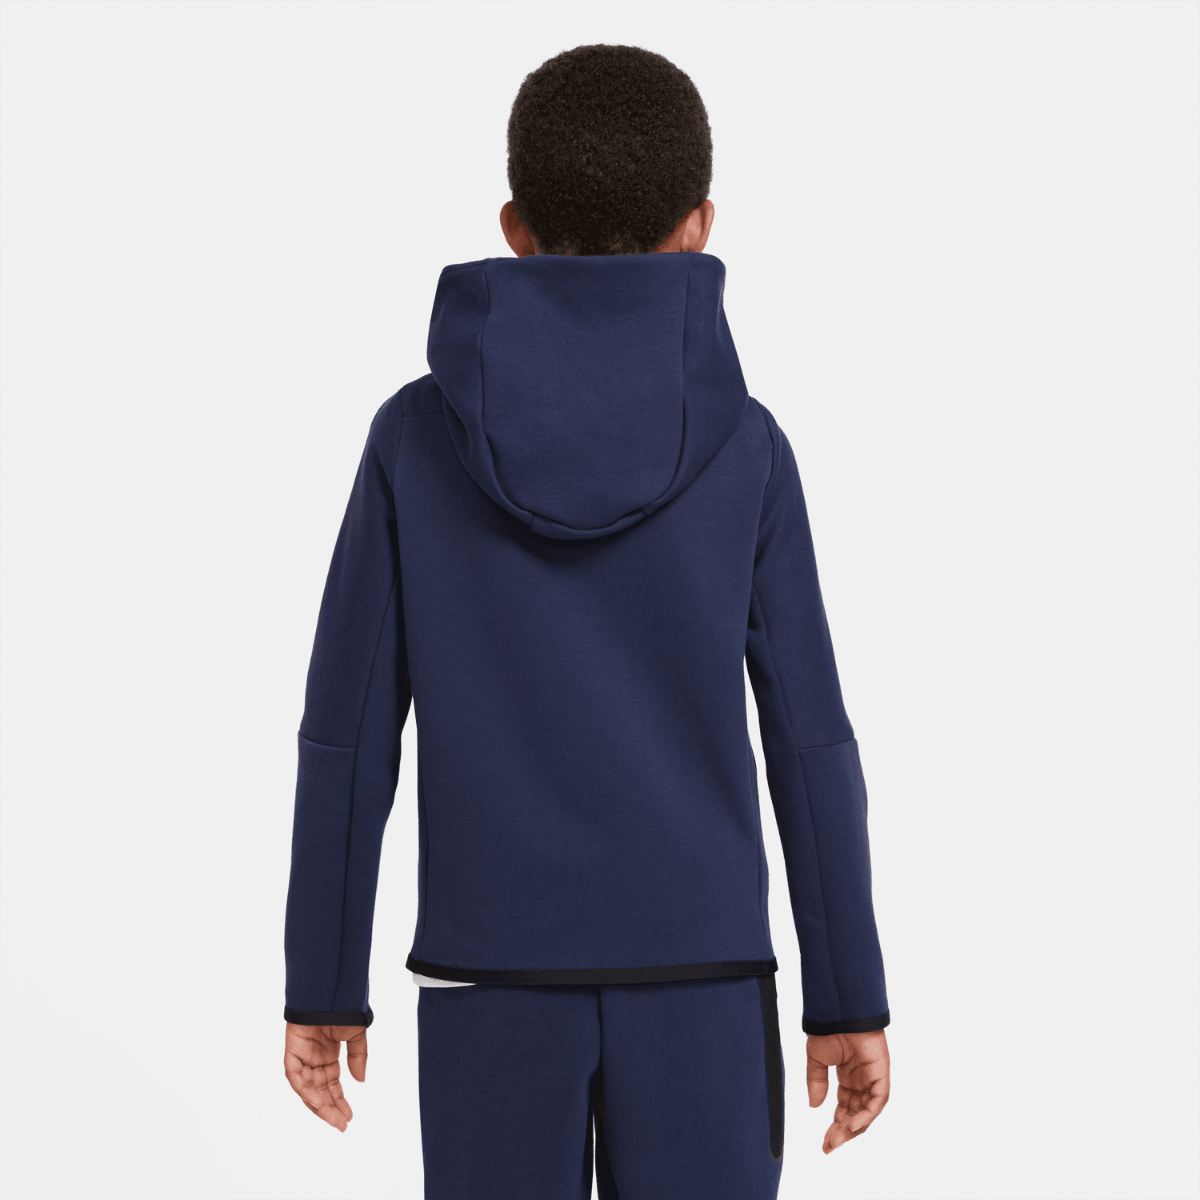 Veste Nike Tech Fleece Junior - Bleu/Noir